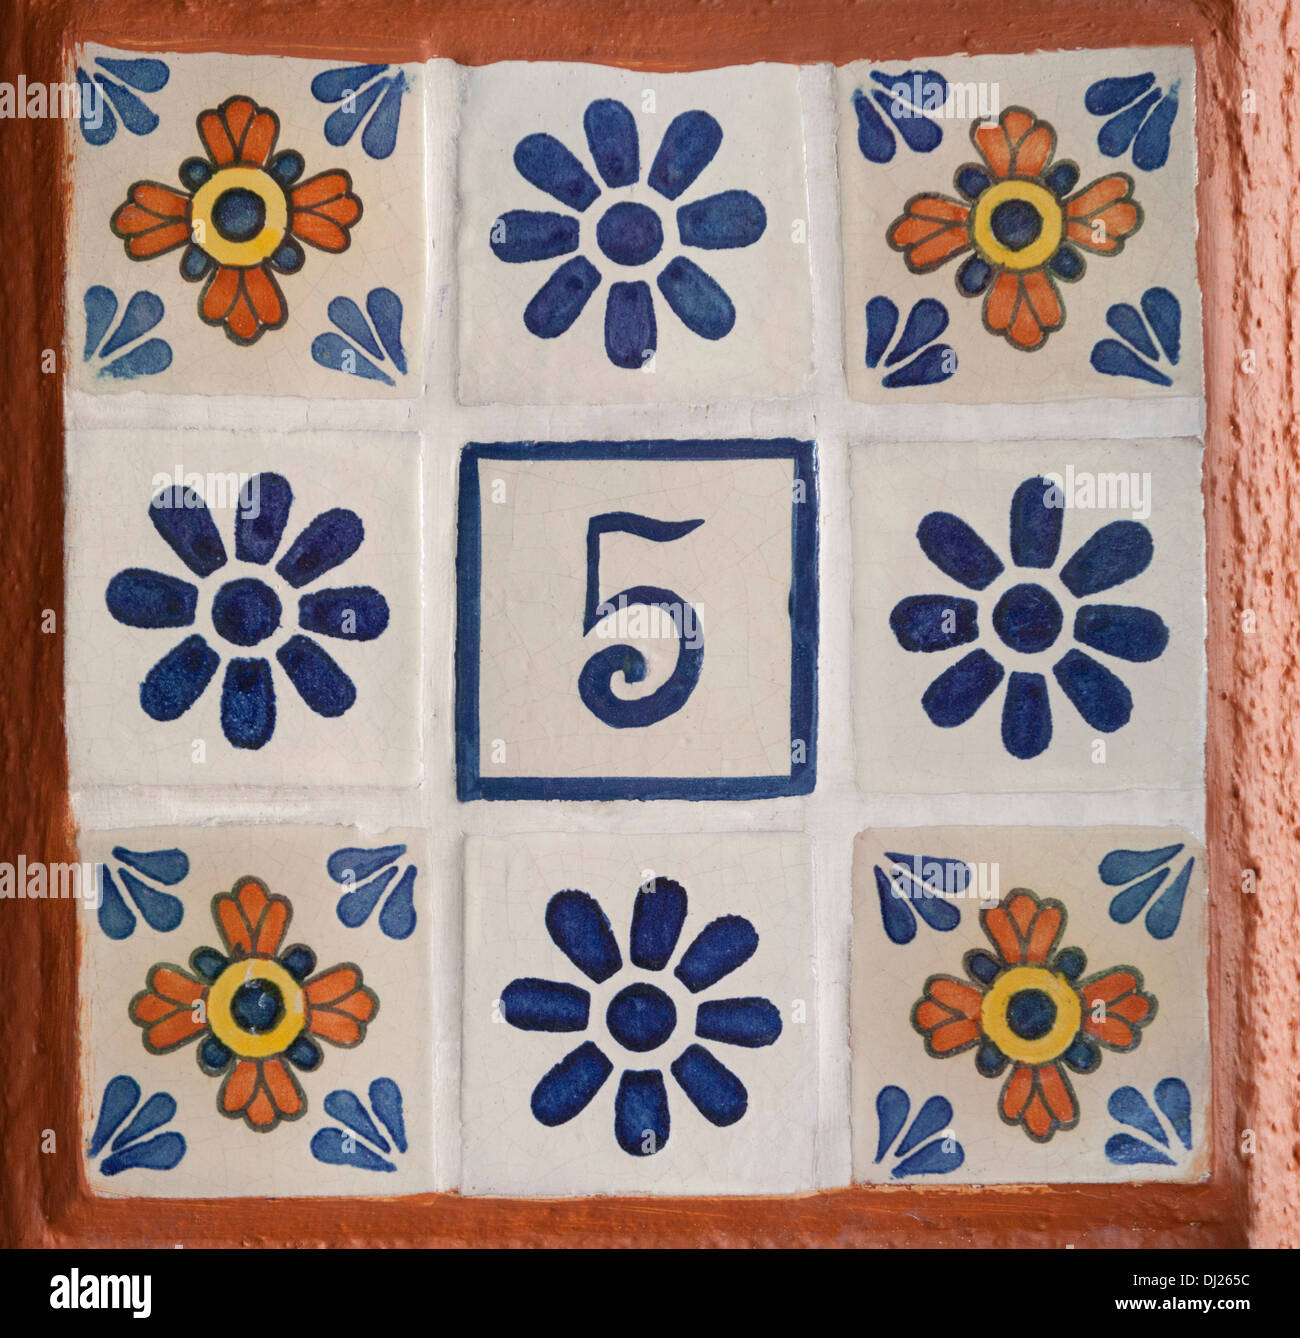 Le nombre 5 mise en carreaux peints à la main chez les autres carreaux floral Banque D'Images